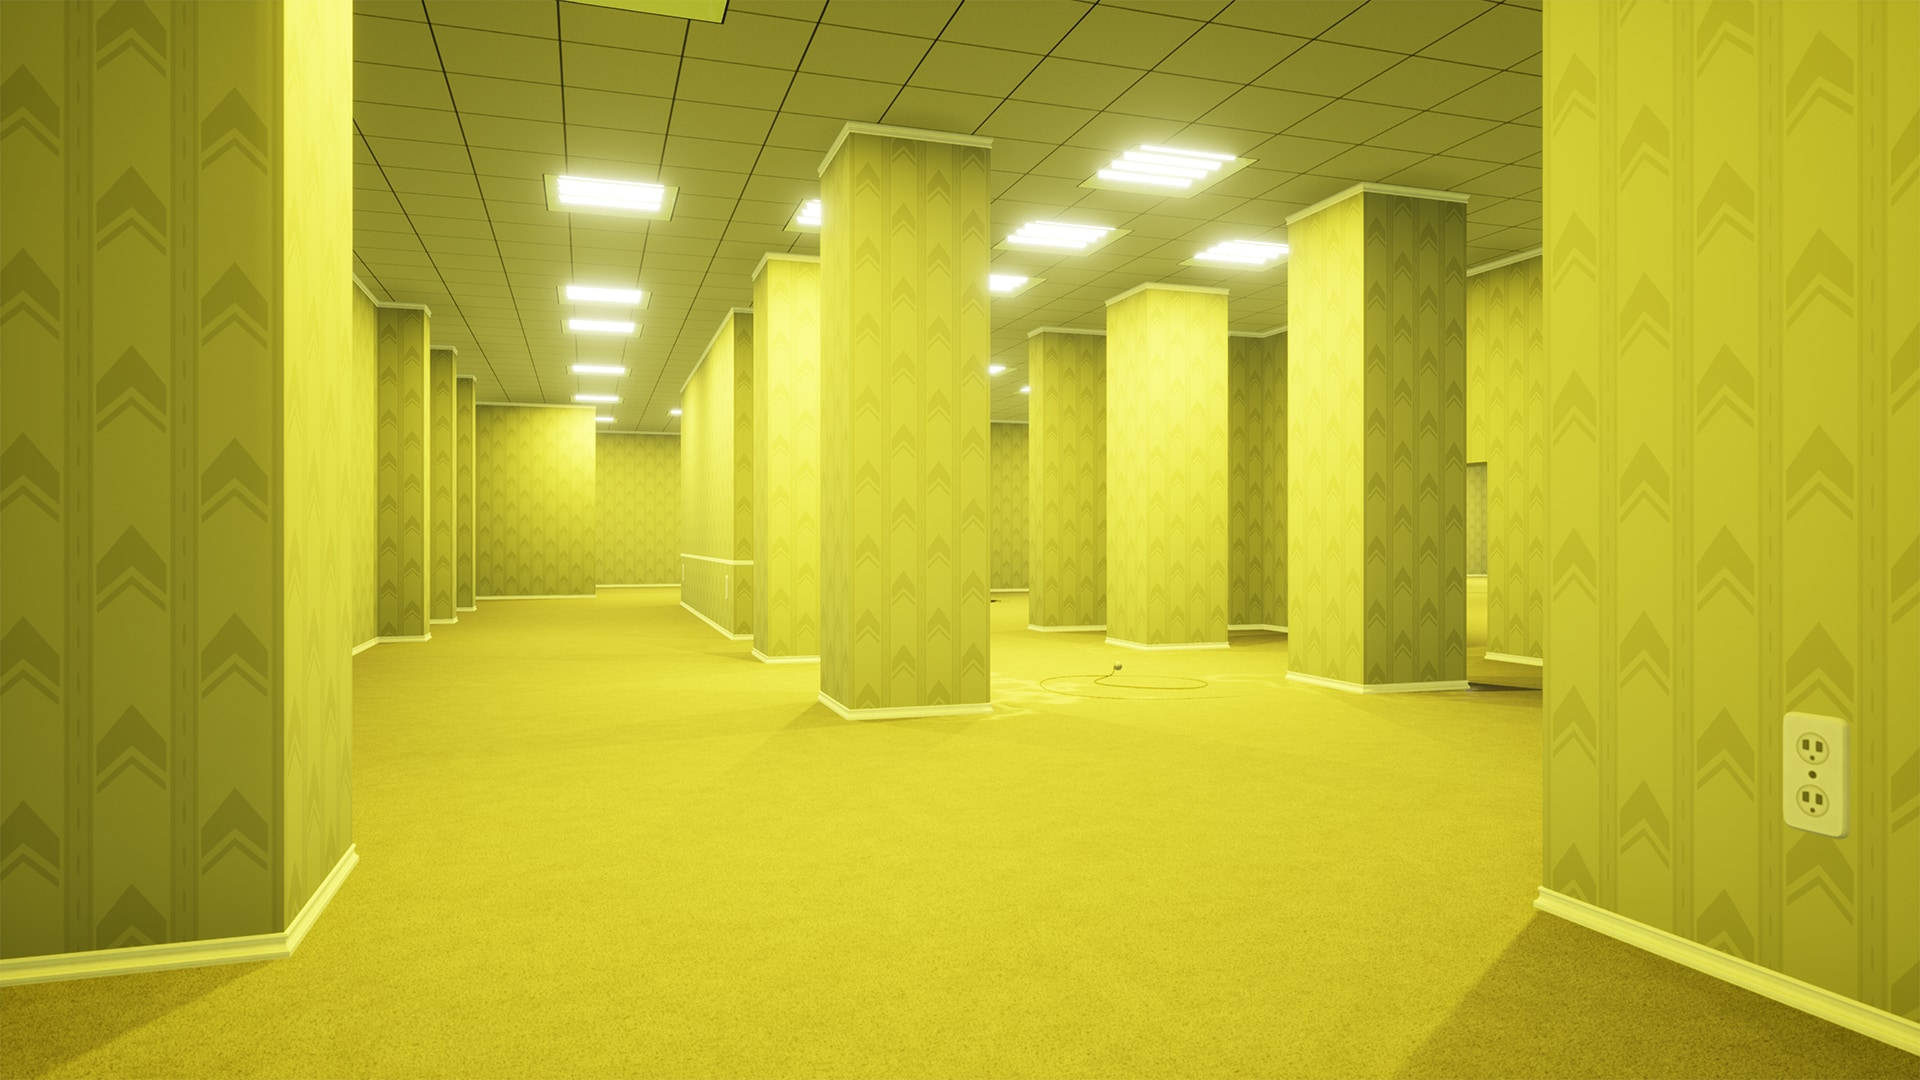 Diehinterzimmer Gelbe Räume Wallpaper